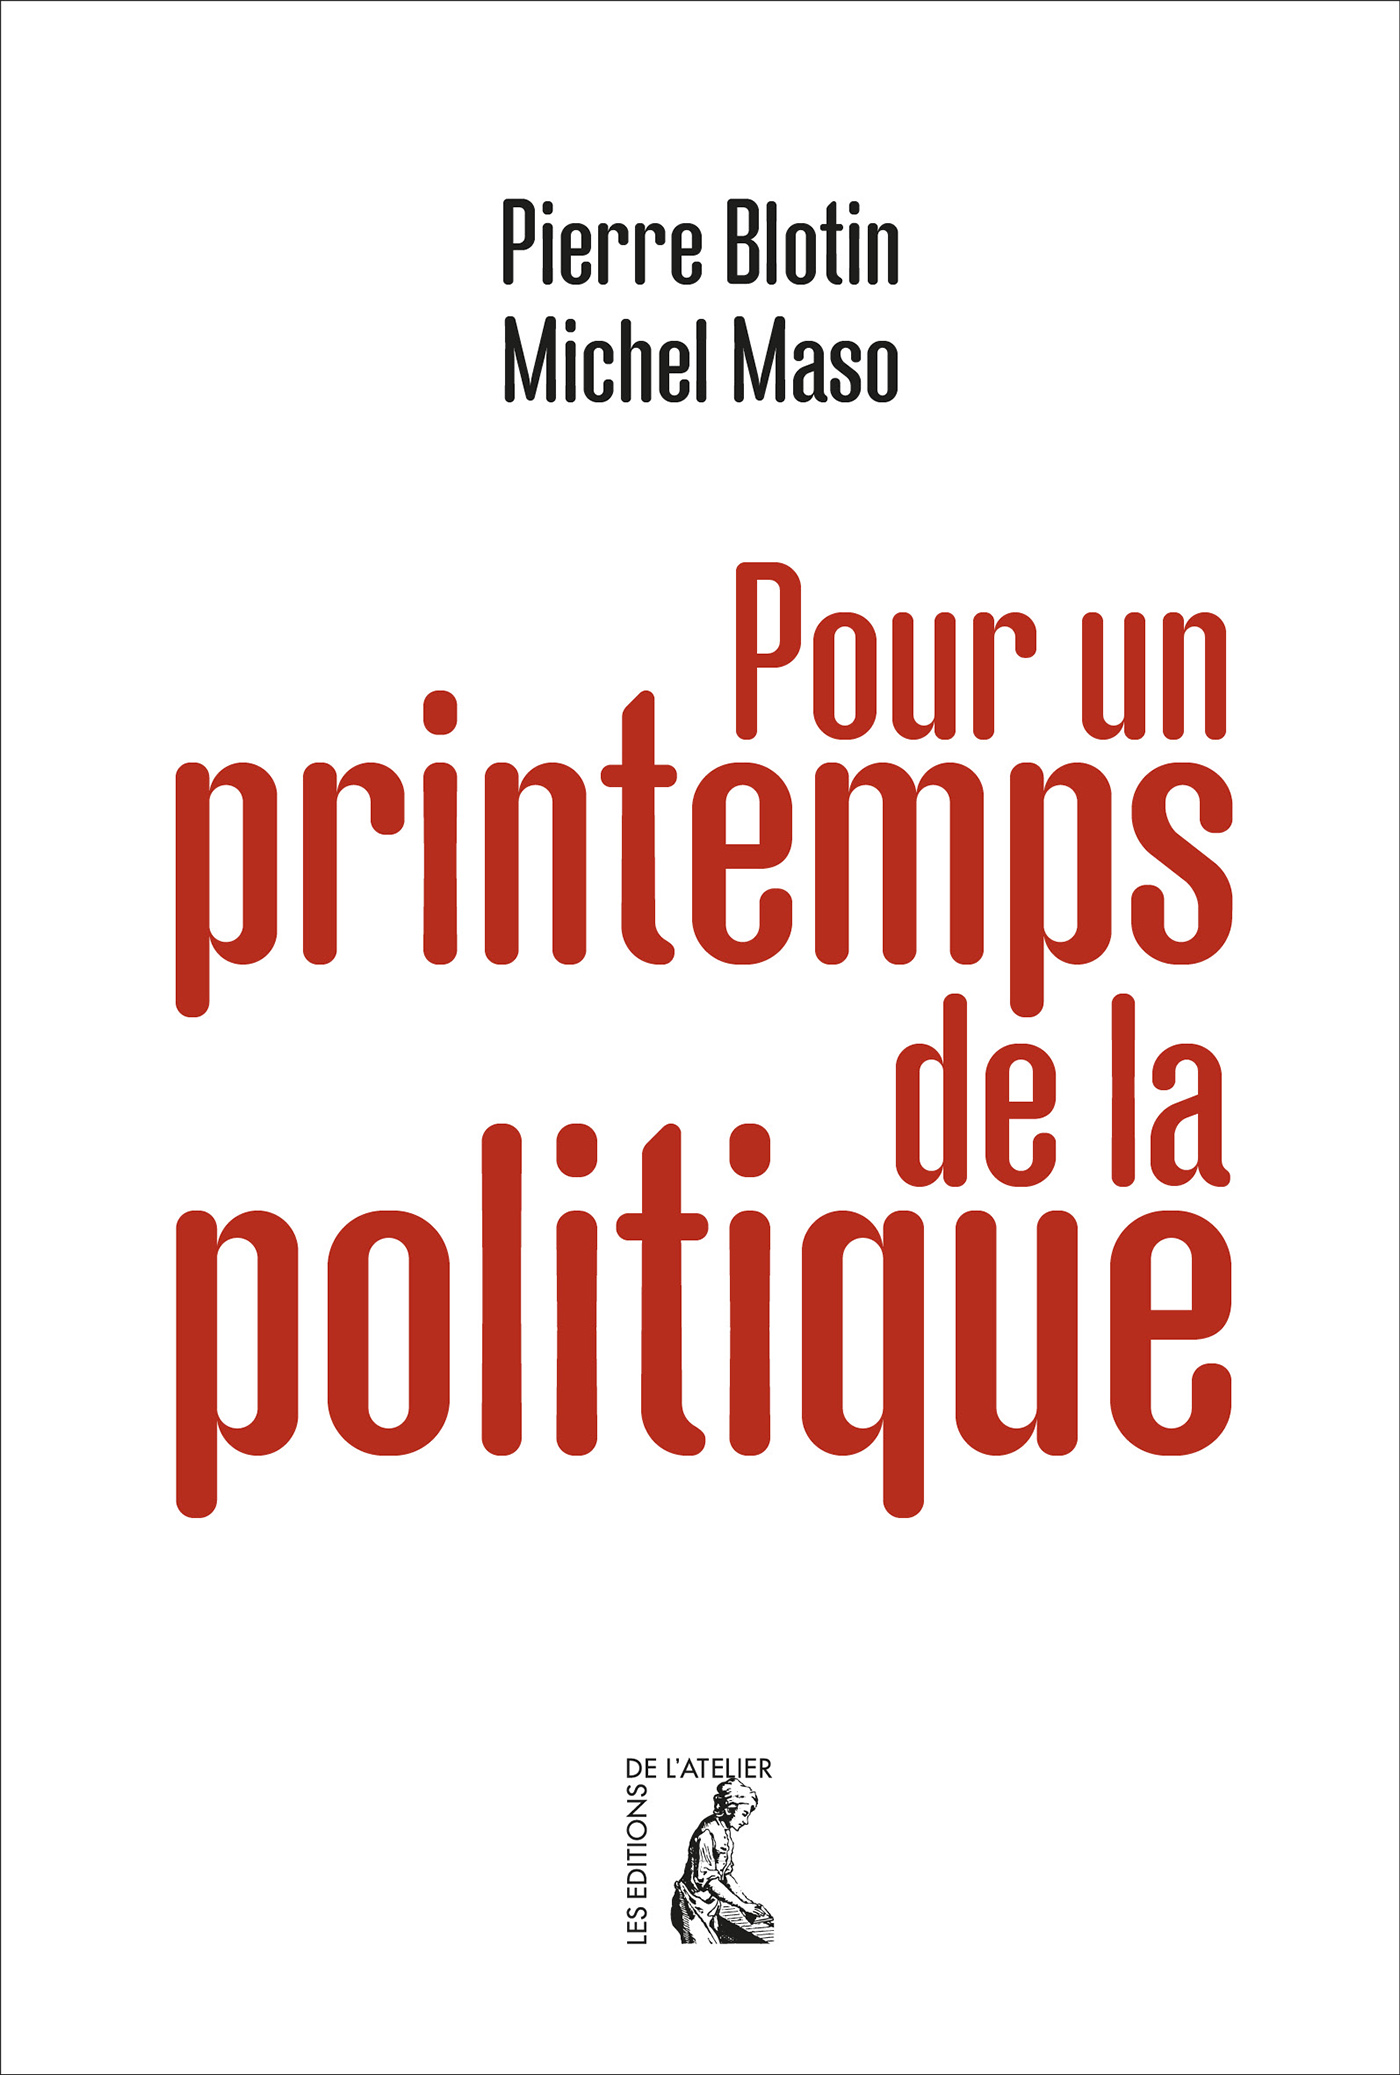 Pour un printemps de la politique - Michel Maso, Pierre Blotin - Éditions de l'Atelier